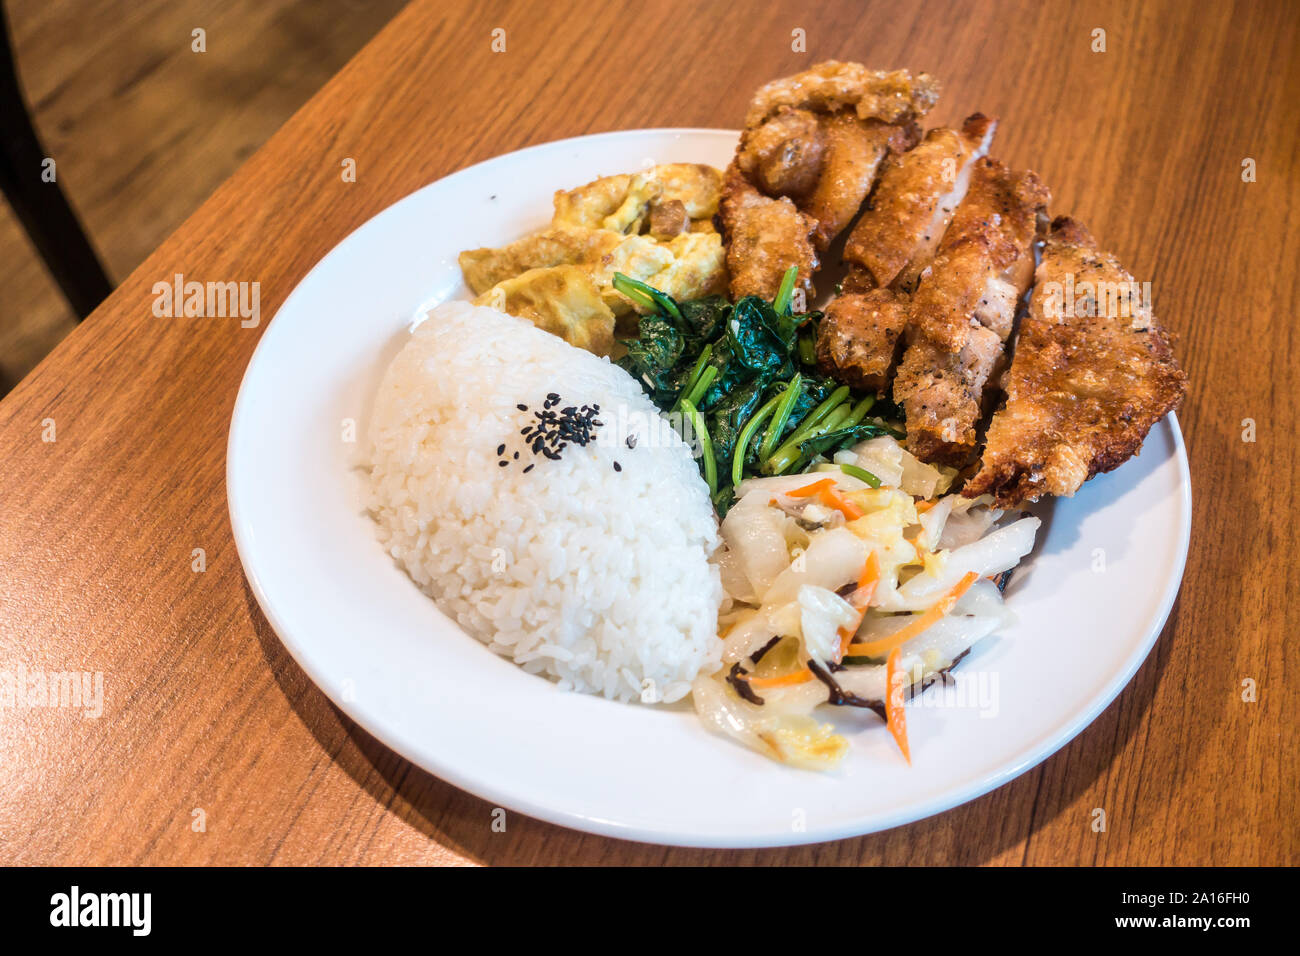 Taiwanische essen Gourmet gebratenes Huhn mit Reis, Bento/boxed Mahlzeit in Holz Hintergrund Stockfoto